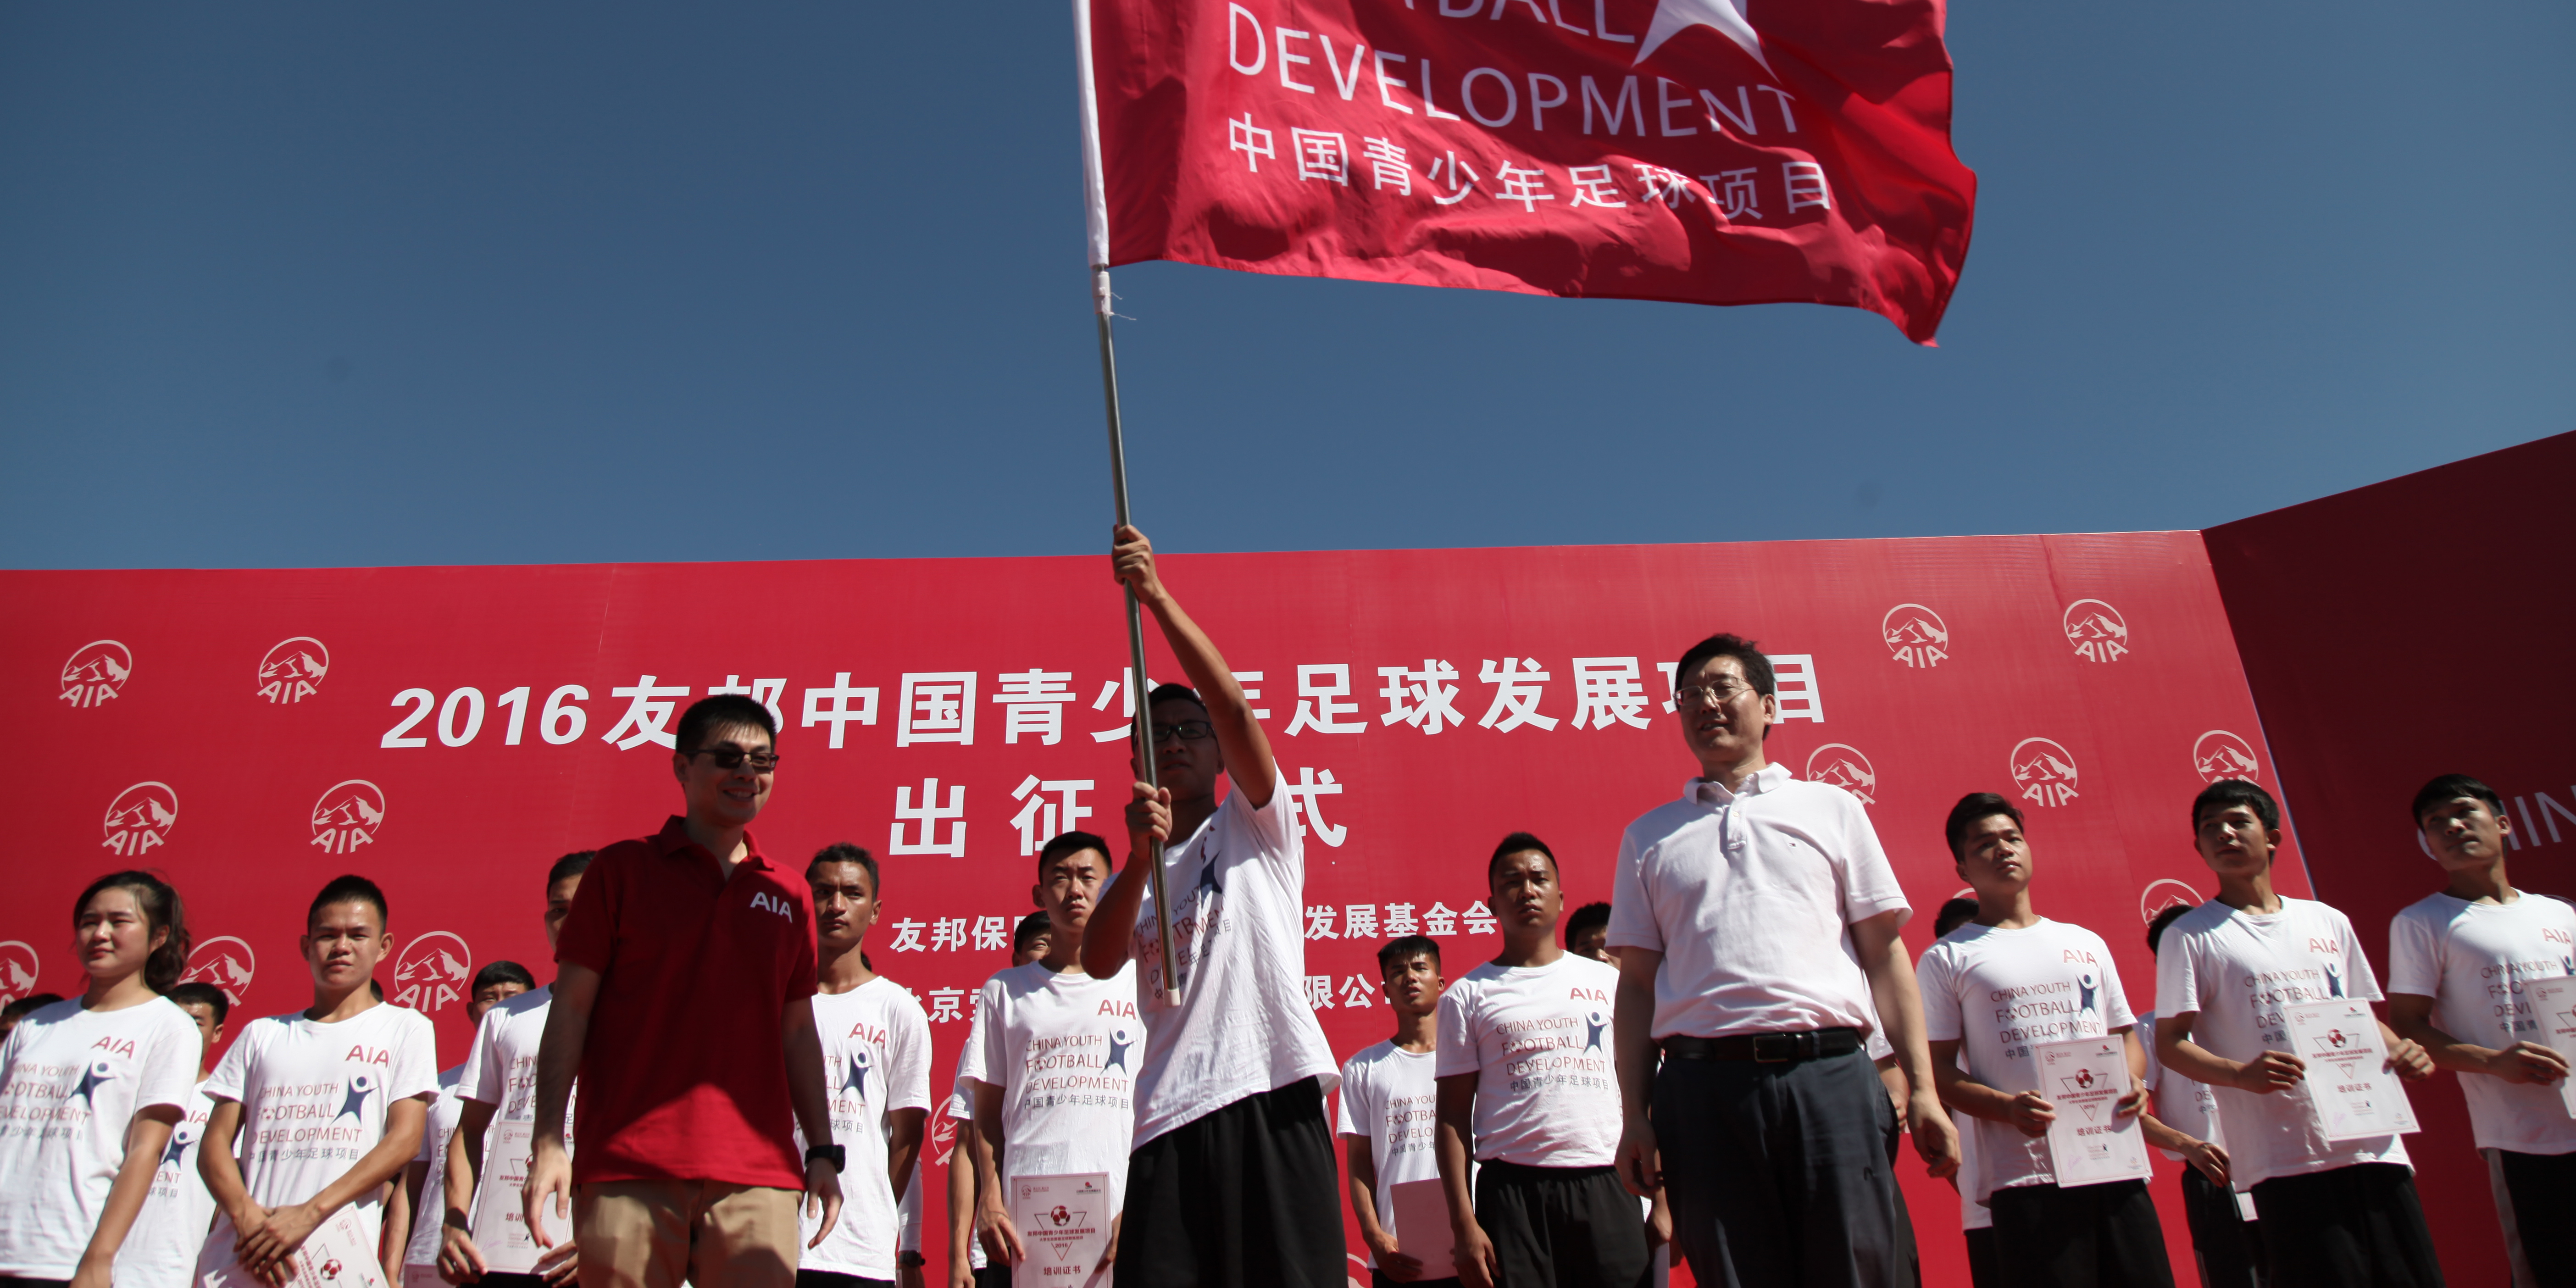 友邦中国及中国青少年发展基金会领导为大学生志愿者颁发志愿者证书并授旗